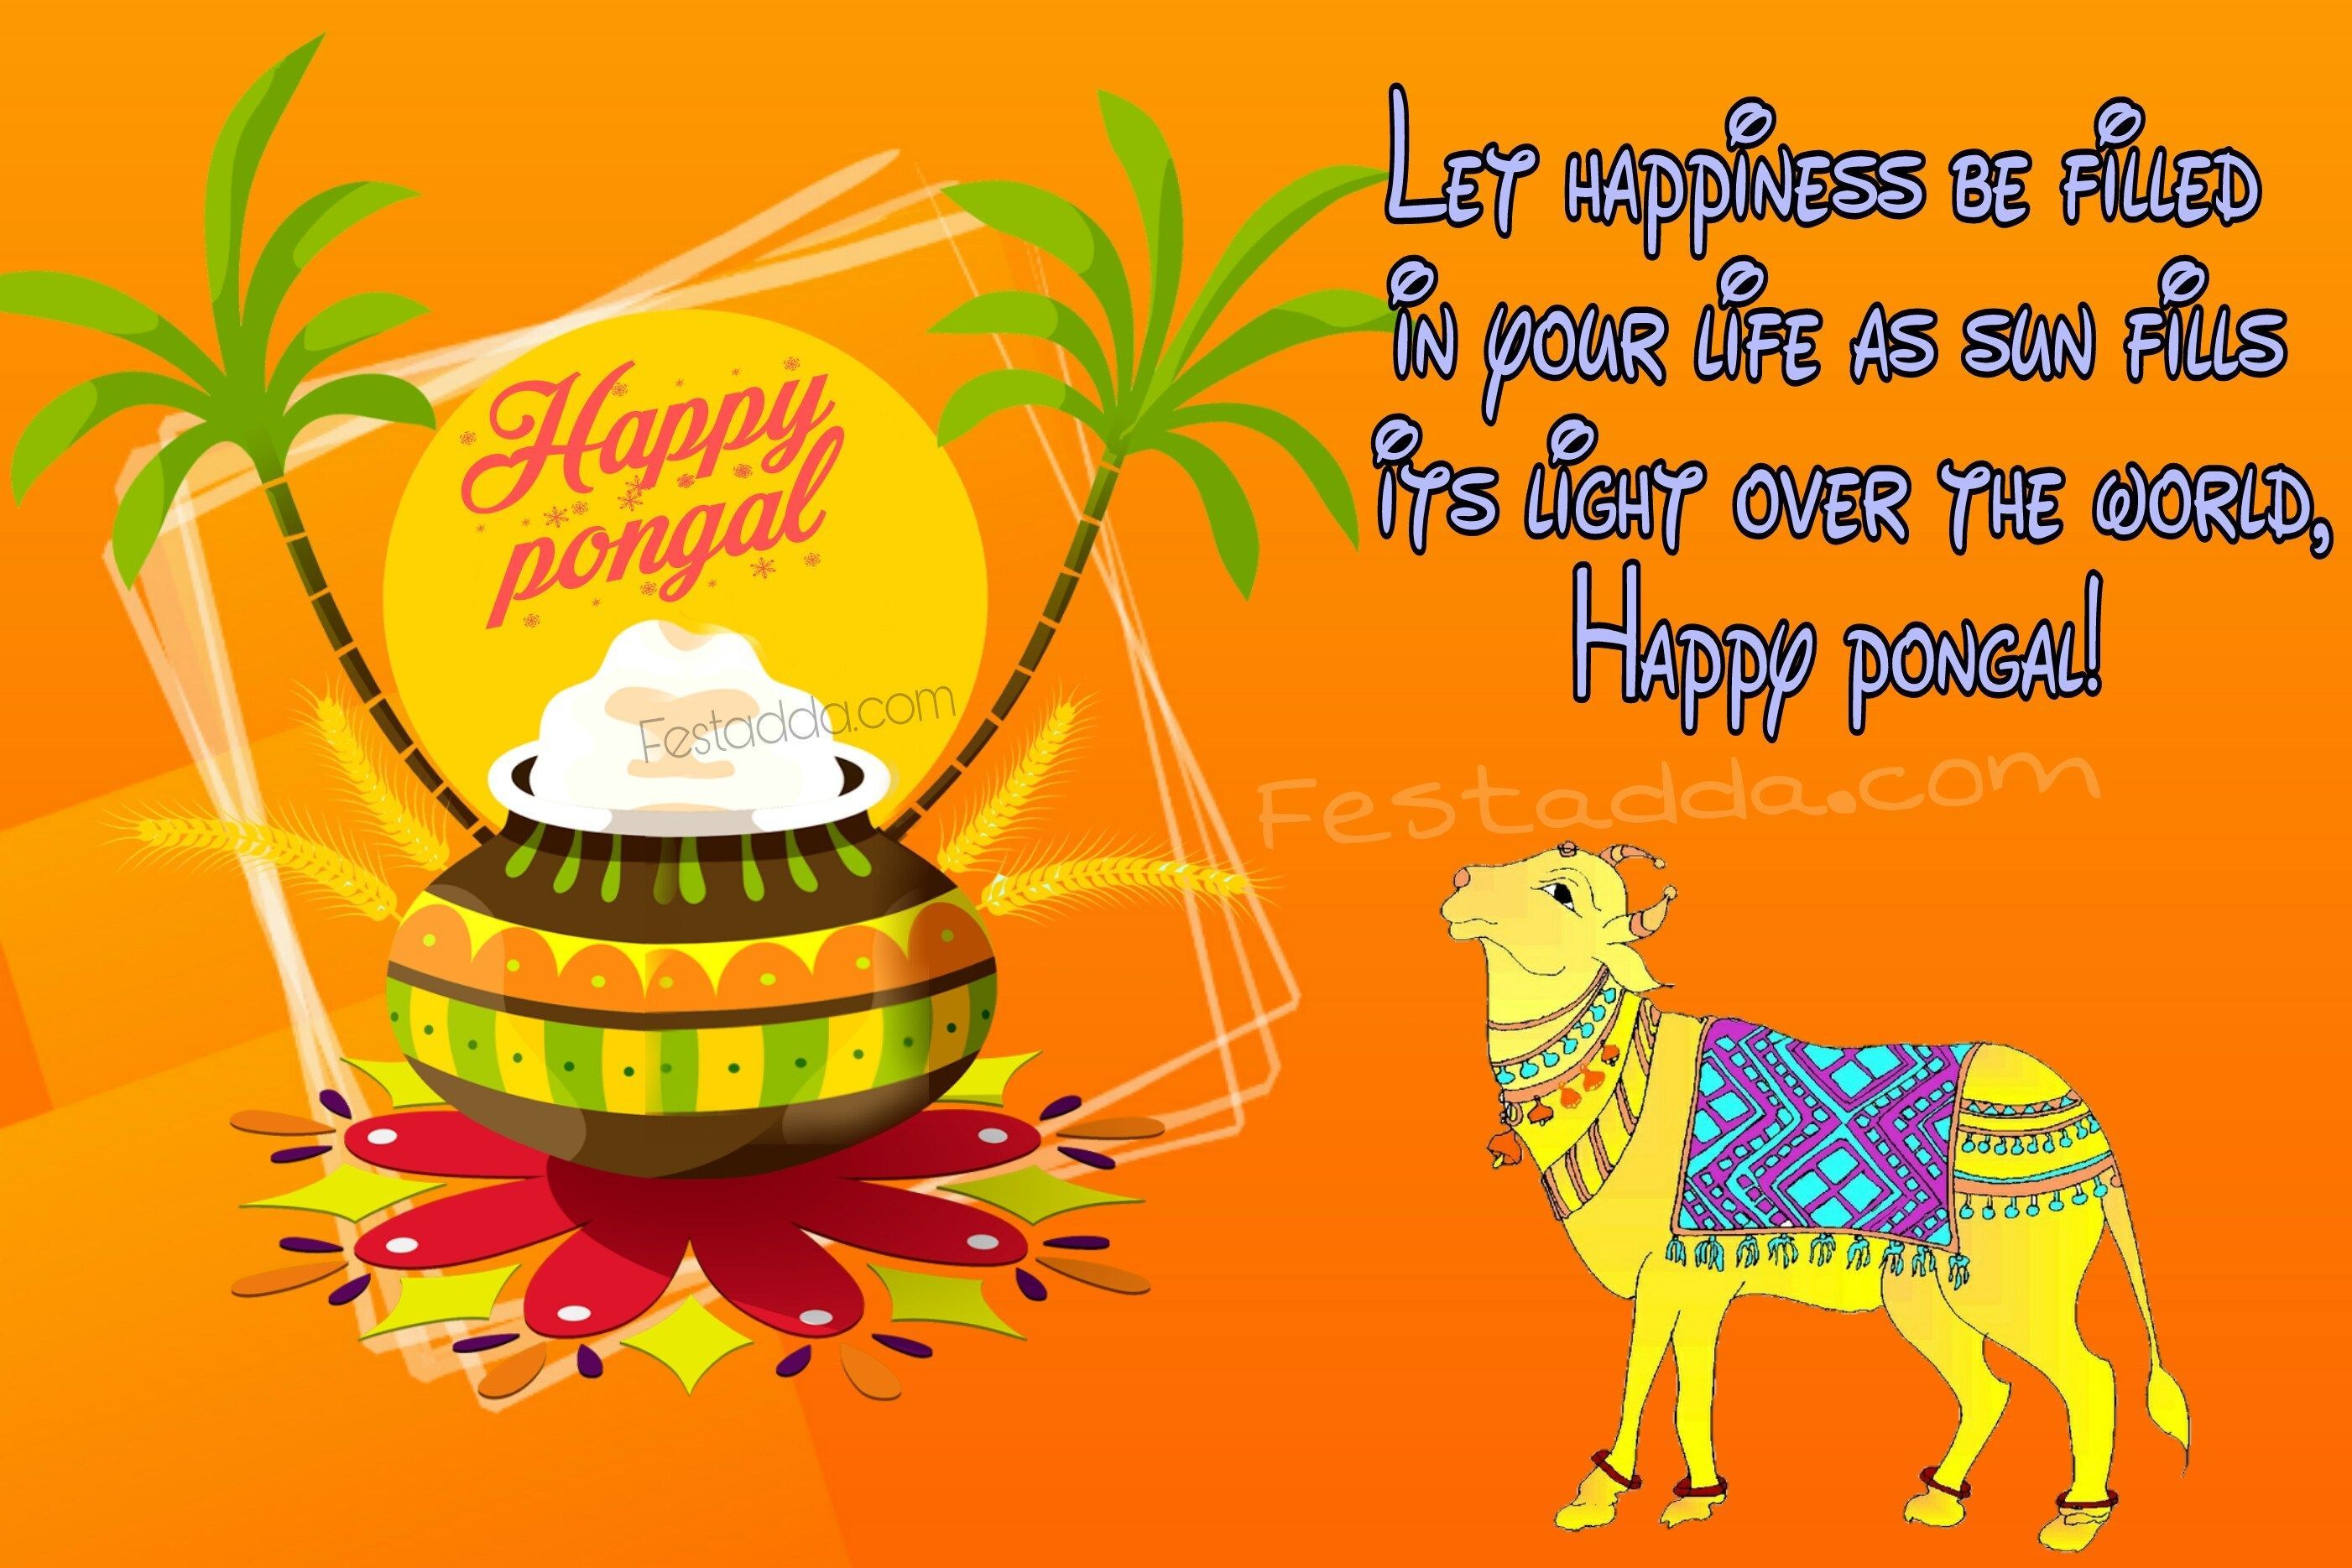 பொங்கல் வாழ்த்துக்கள். Happy pongal, Happy pongal wishes, Wishes image